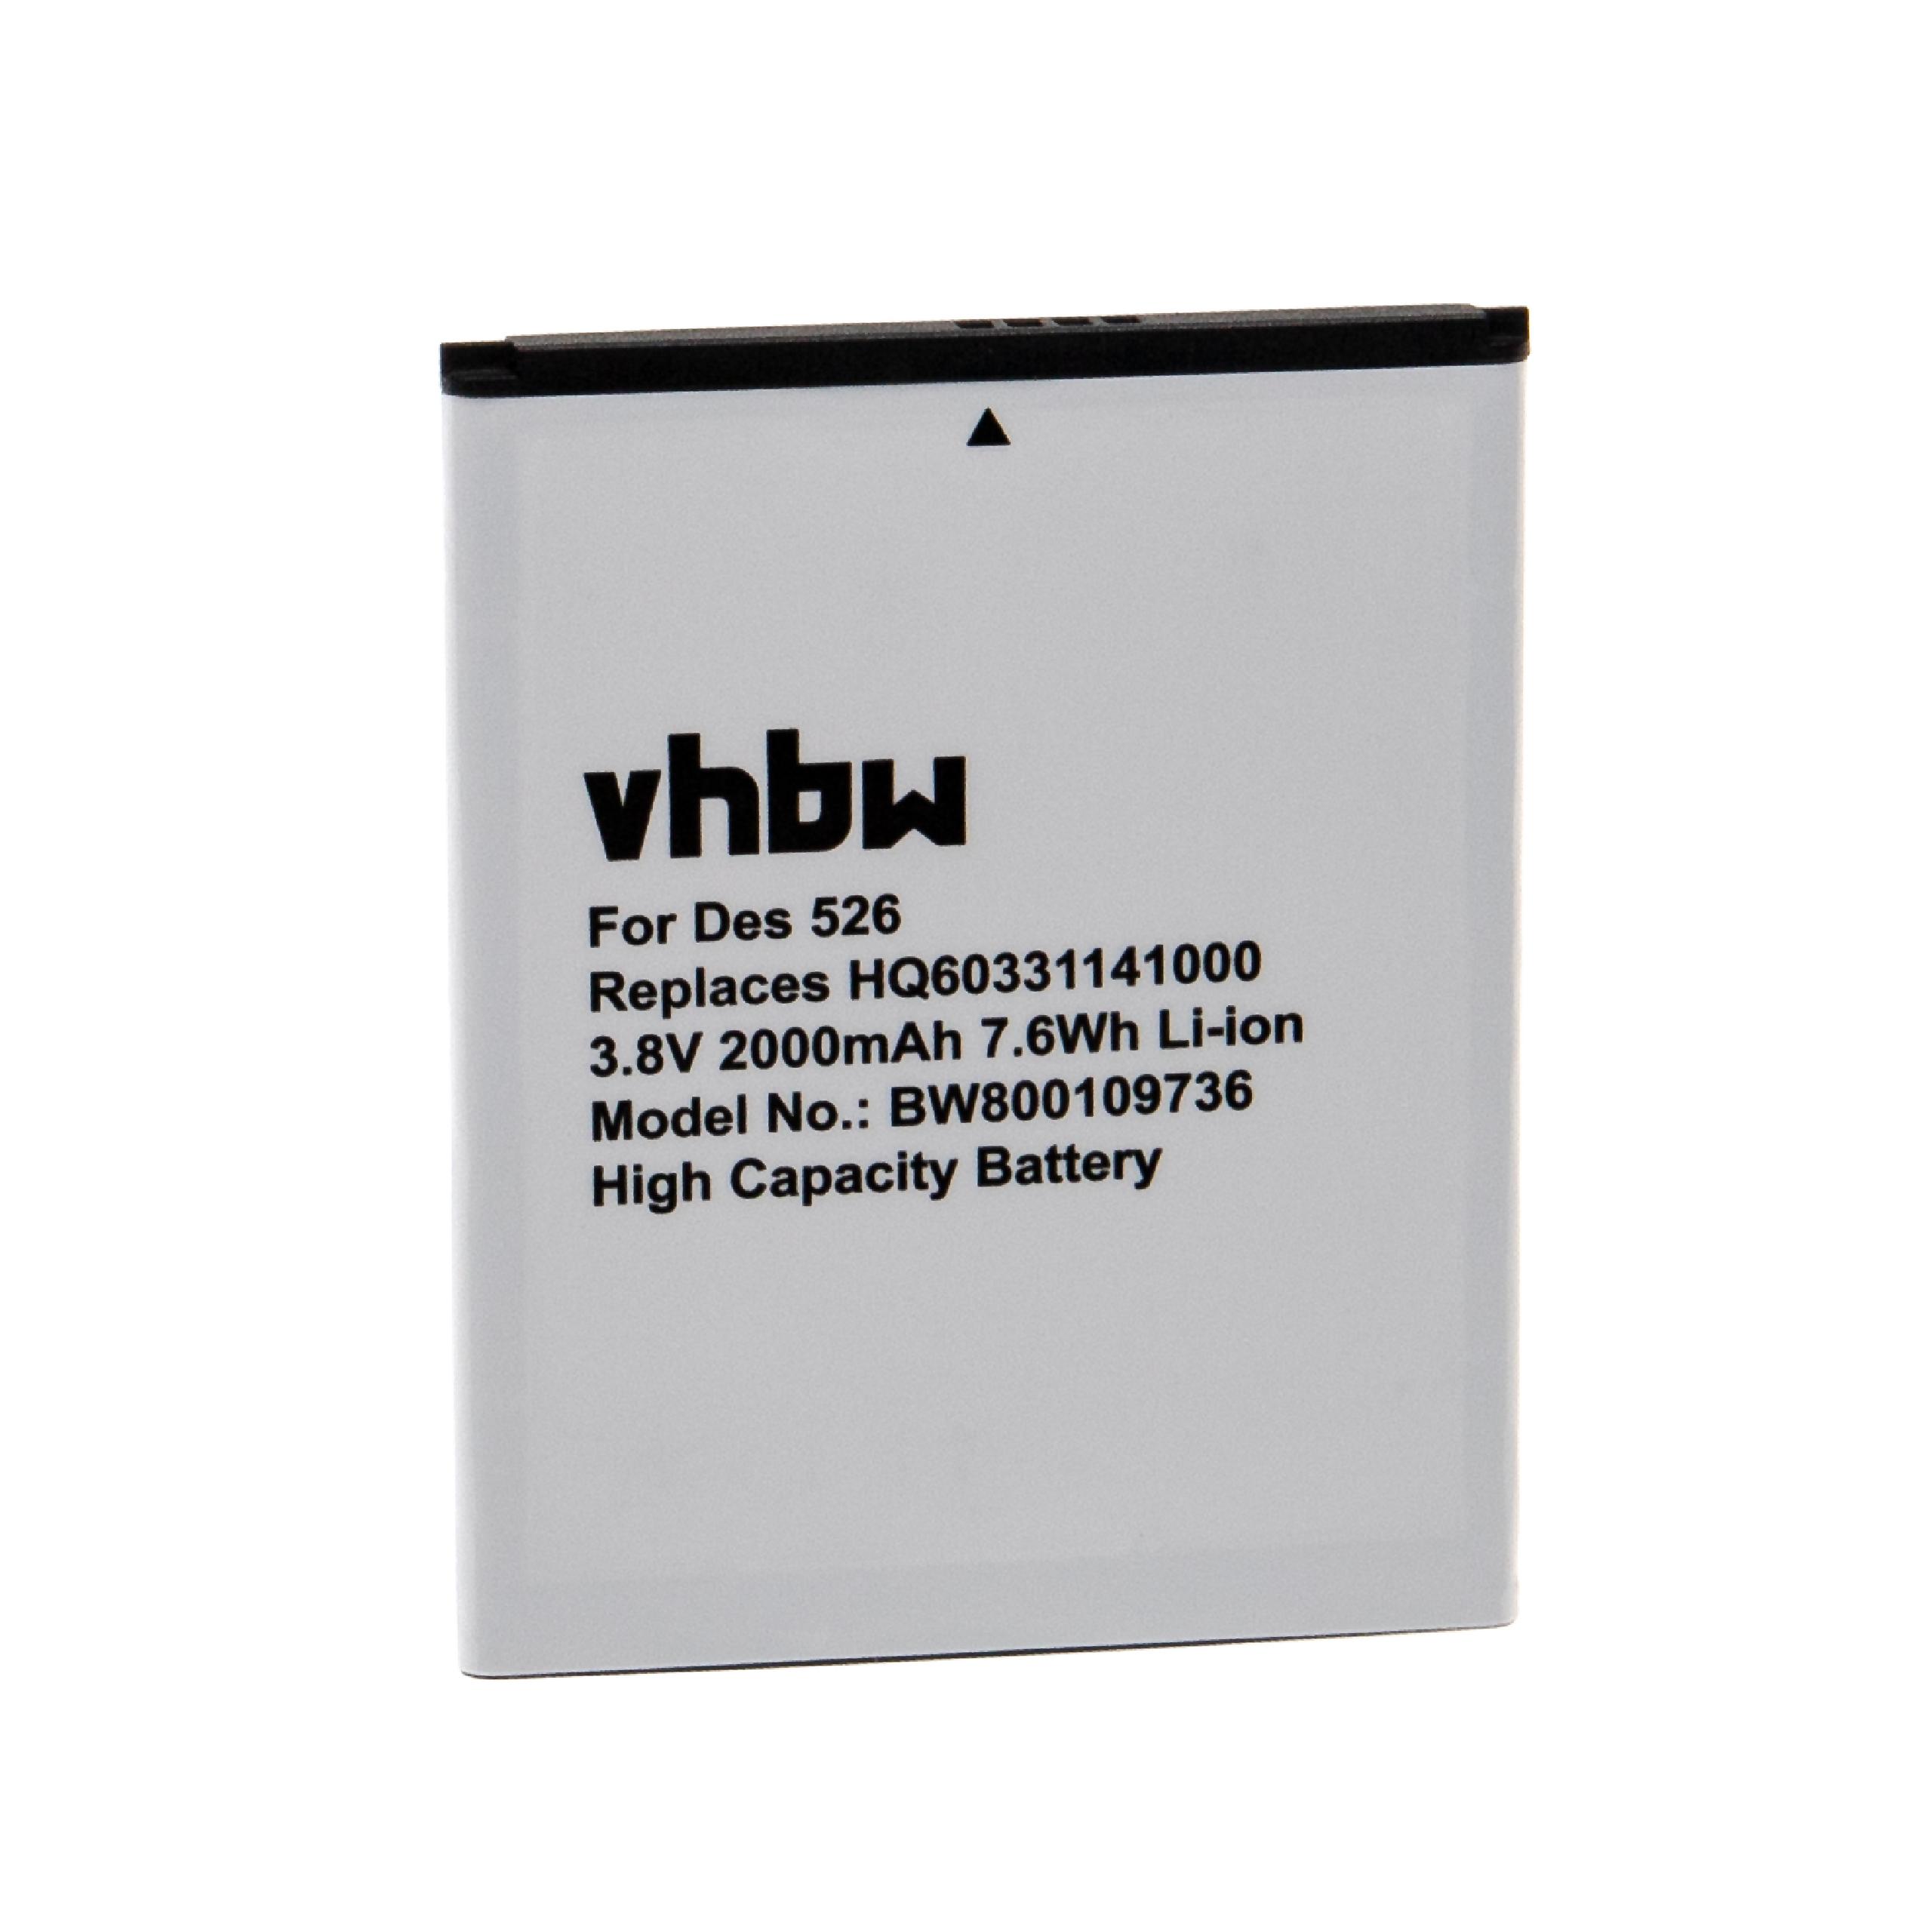 Batterie remplace BOPL4100 pour téléphone portable - 2000mAh, 3,8V, Li-ion